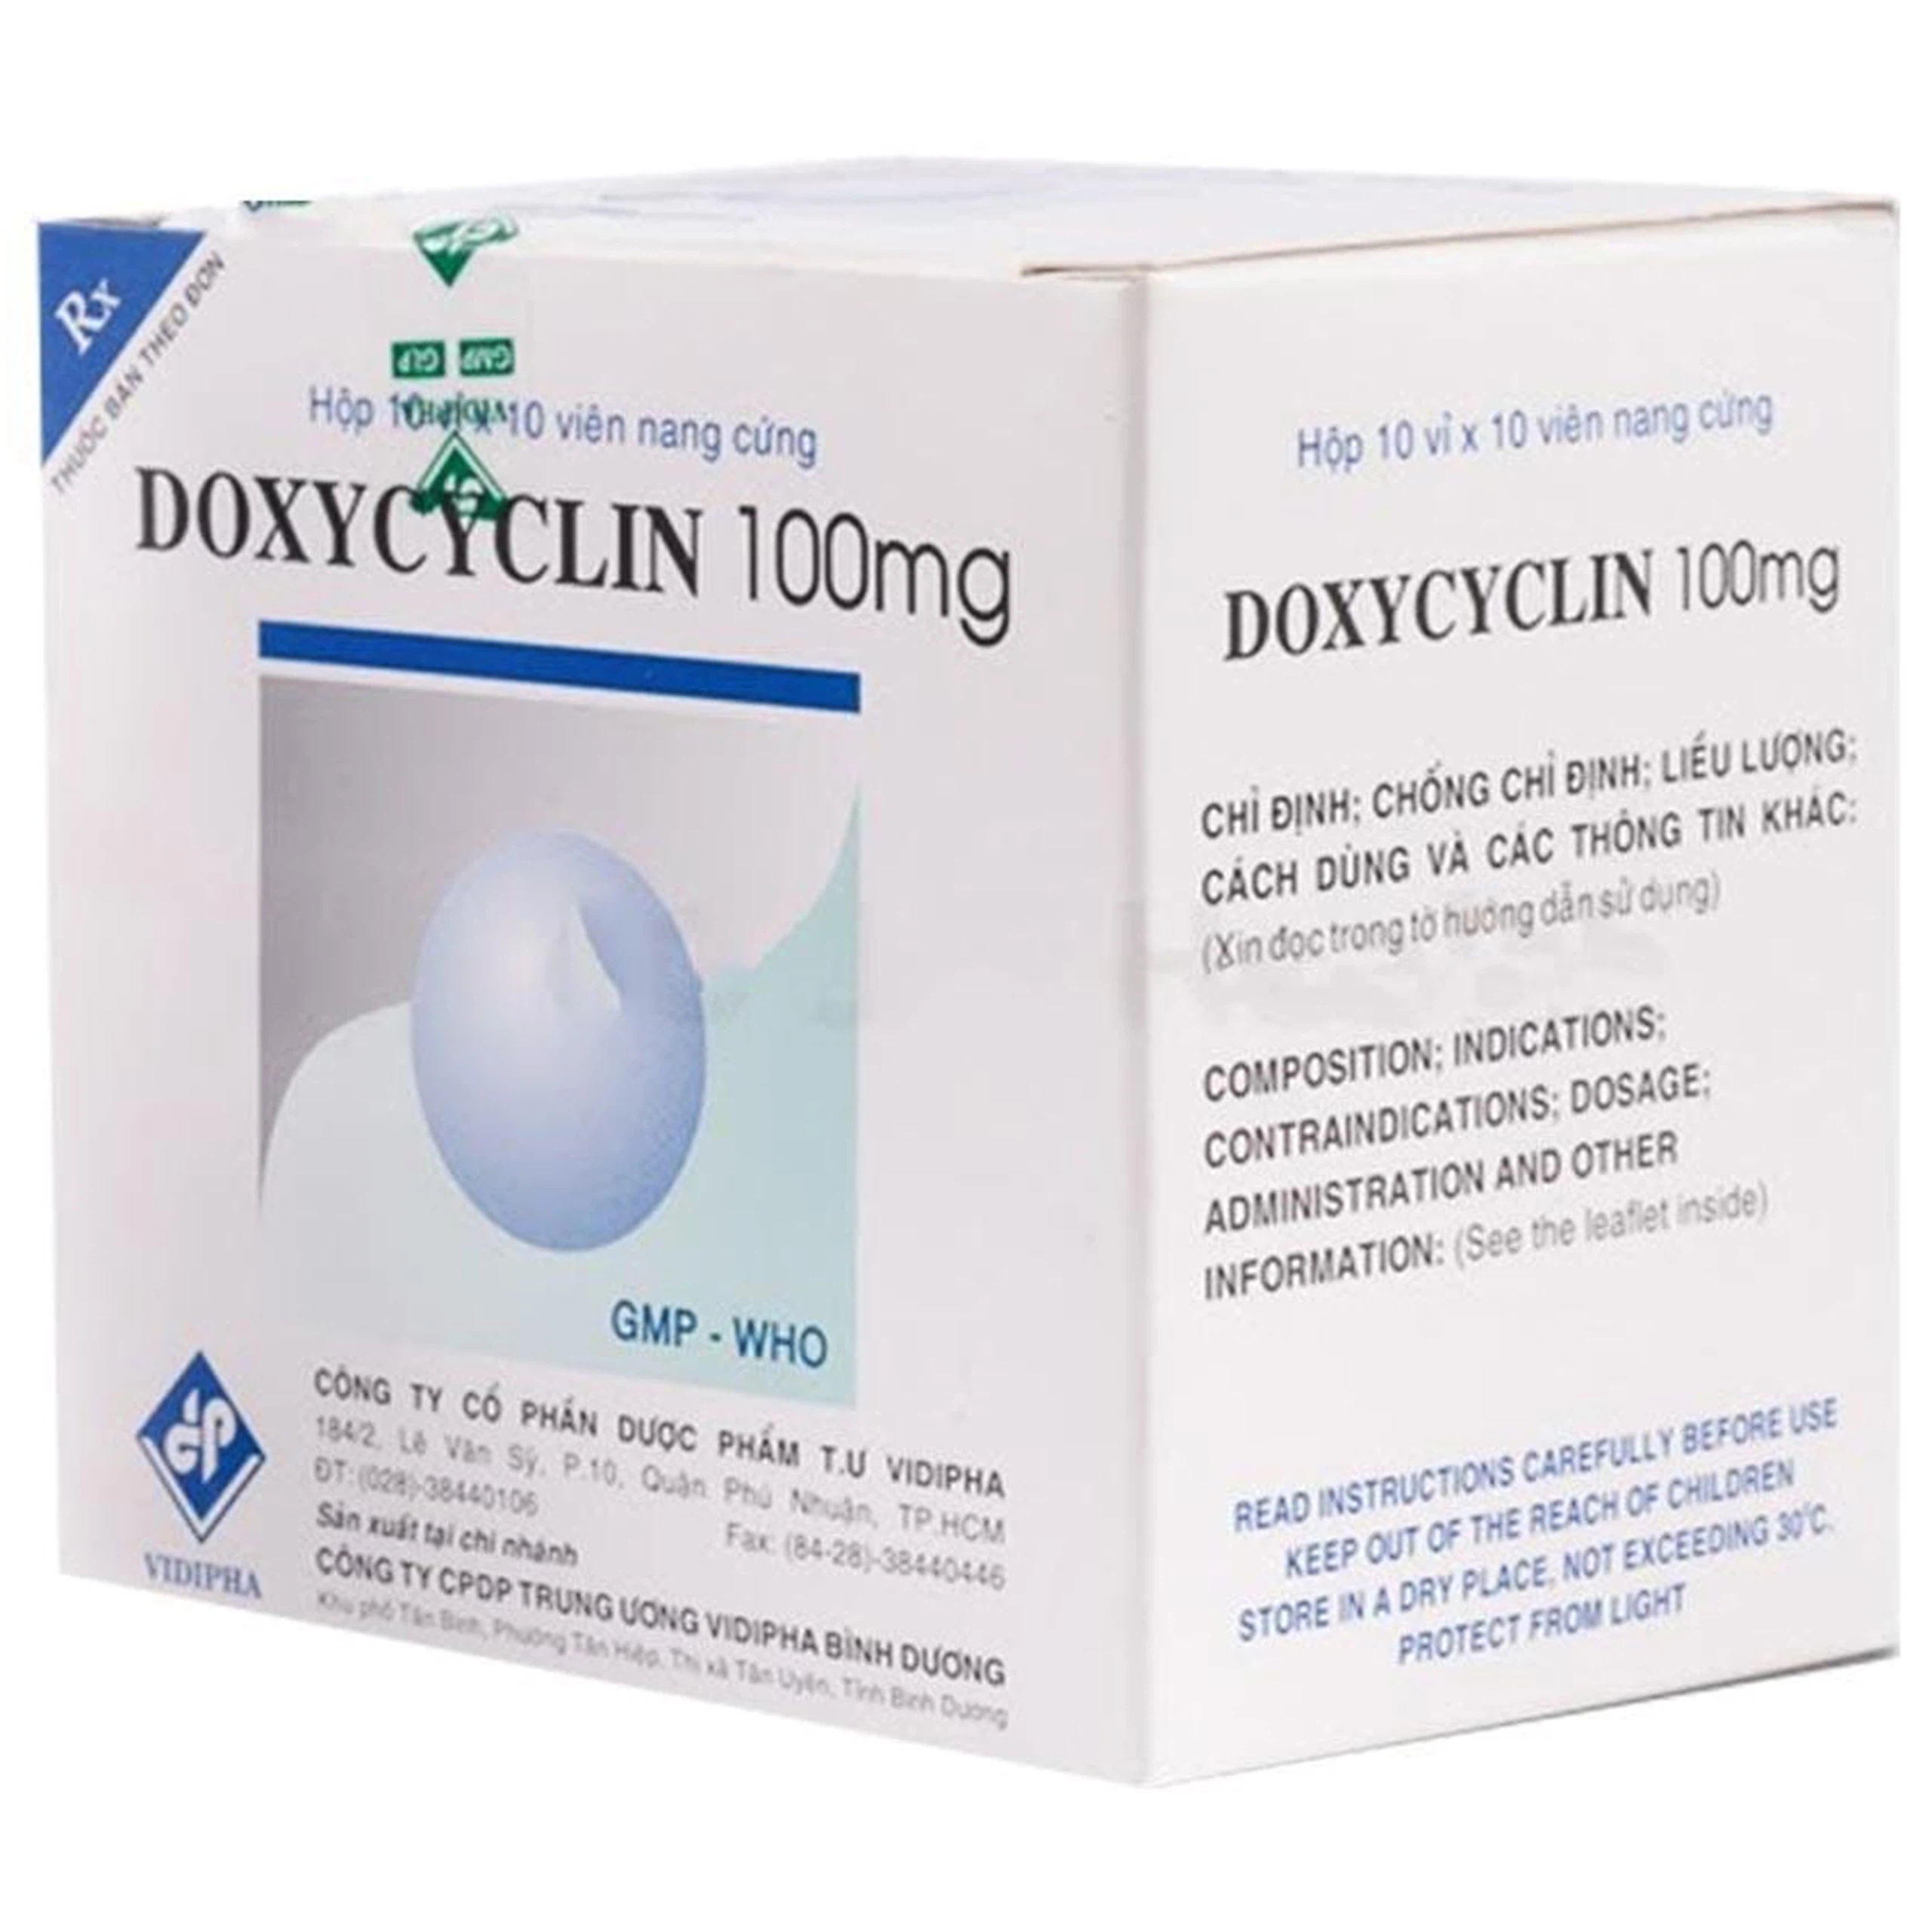 Thuốc Doxycyclin 100mg Vidipha điều trị nhiễm khuẩn (10 vỉ x 10 viên)